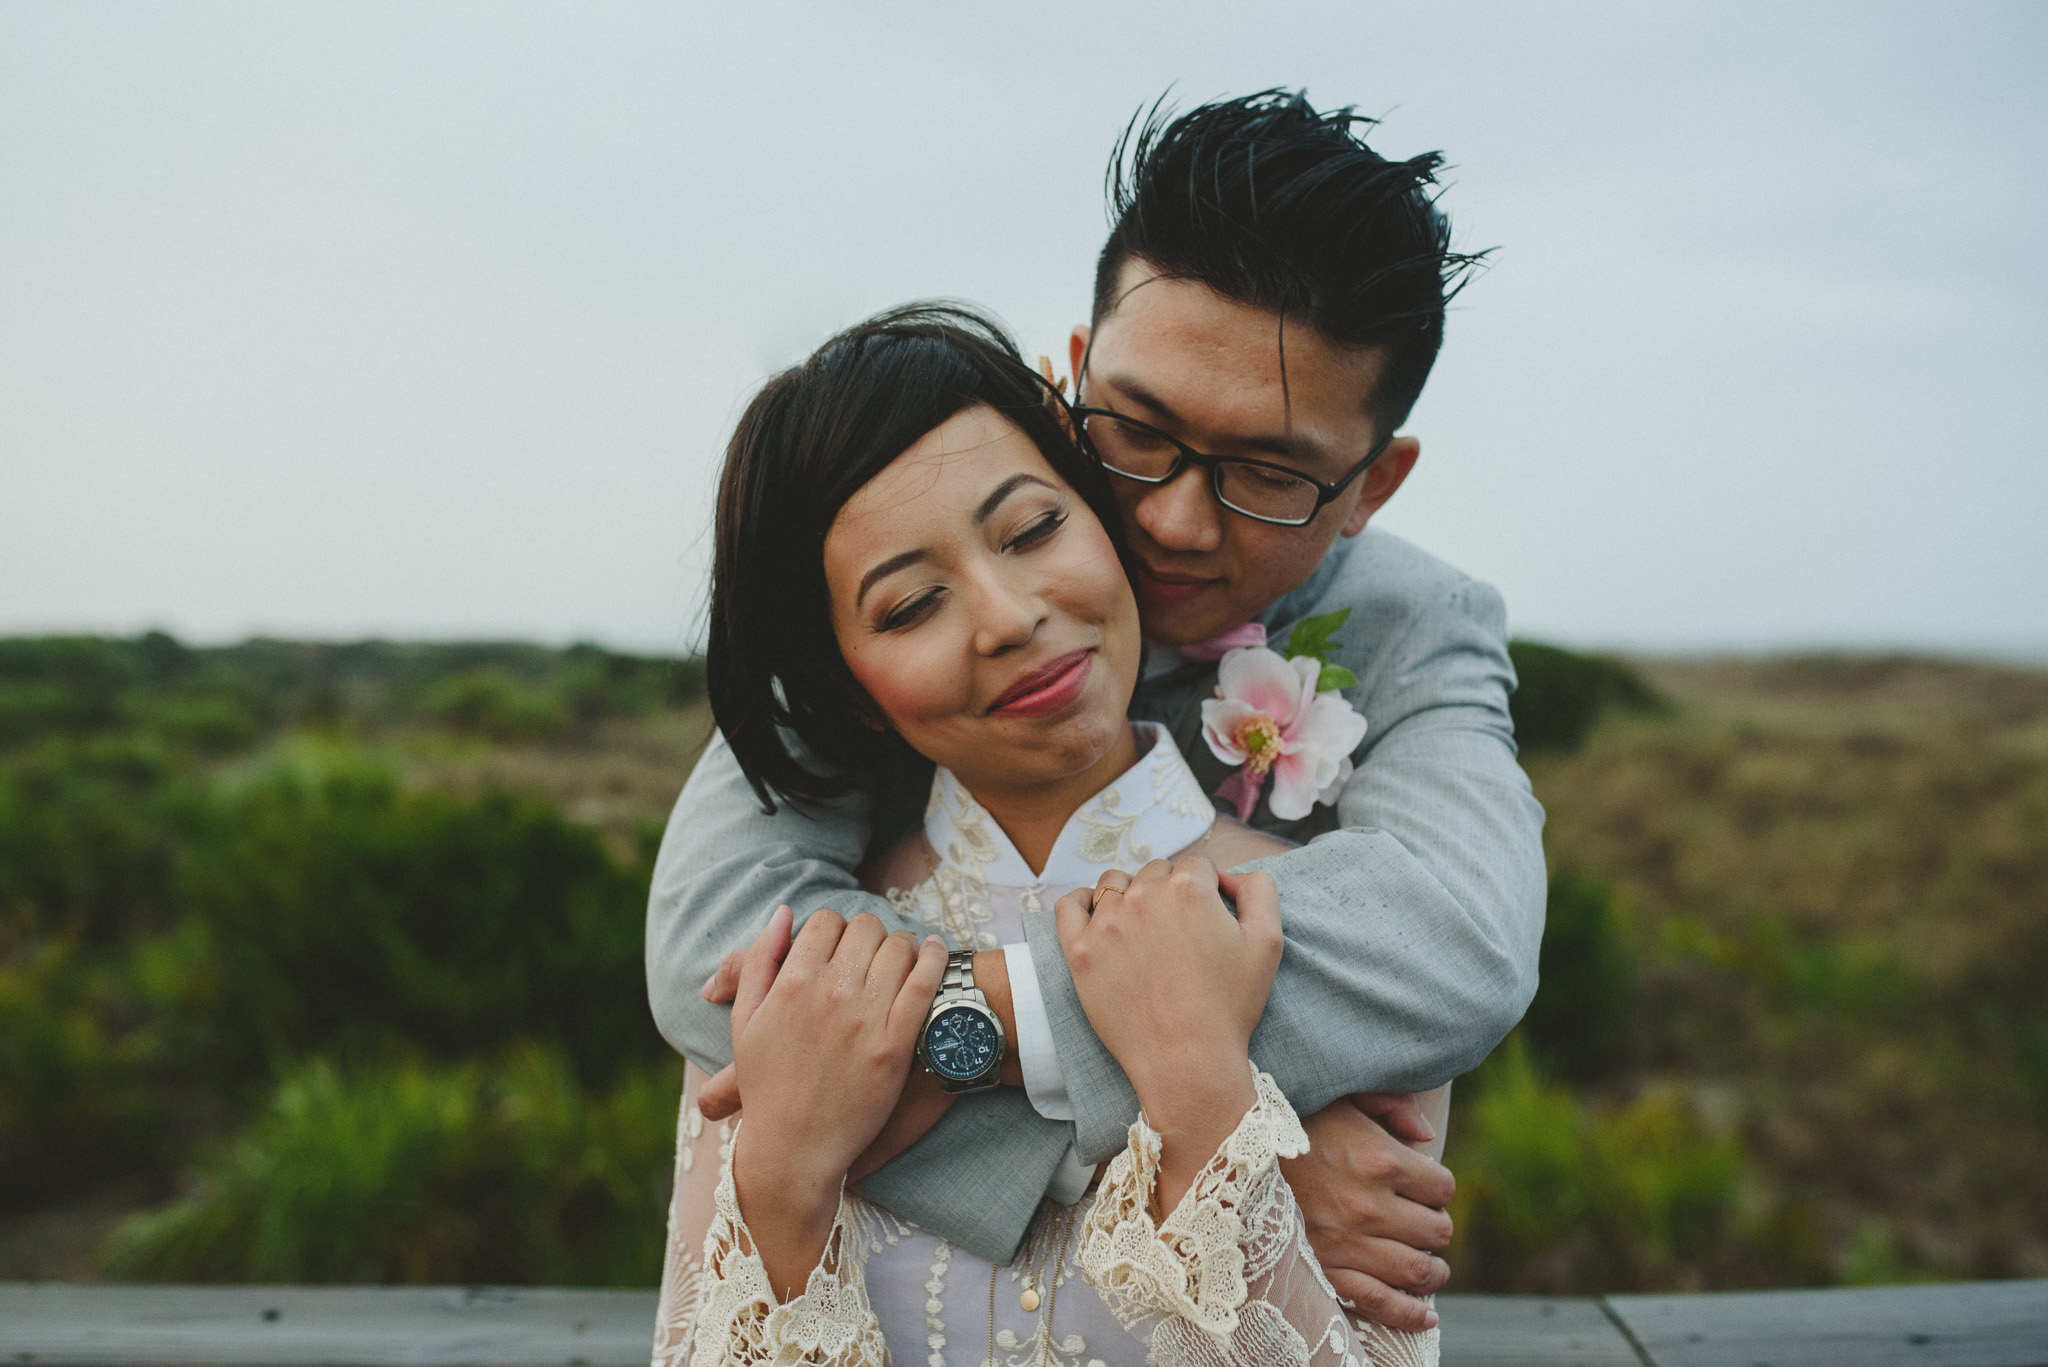 Tybee Island Wedding Photographer - Couple hugging